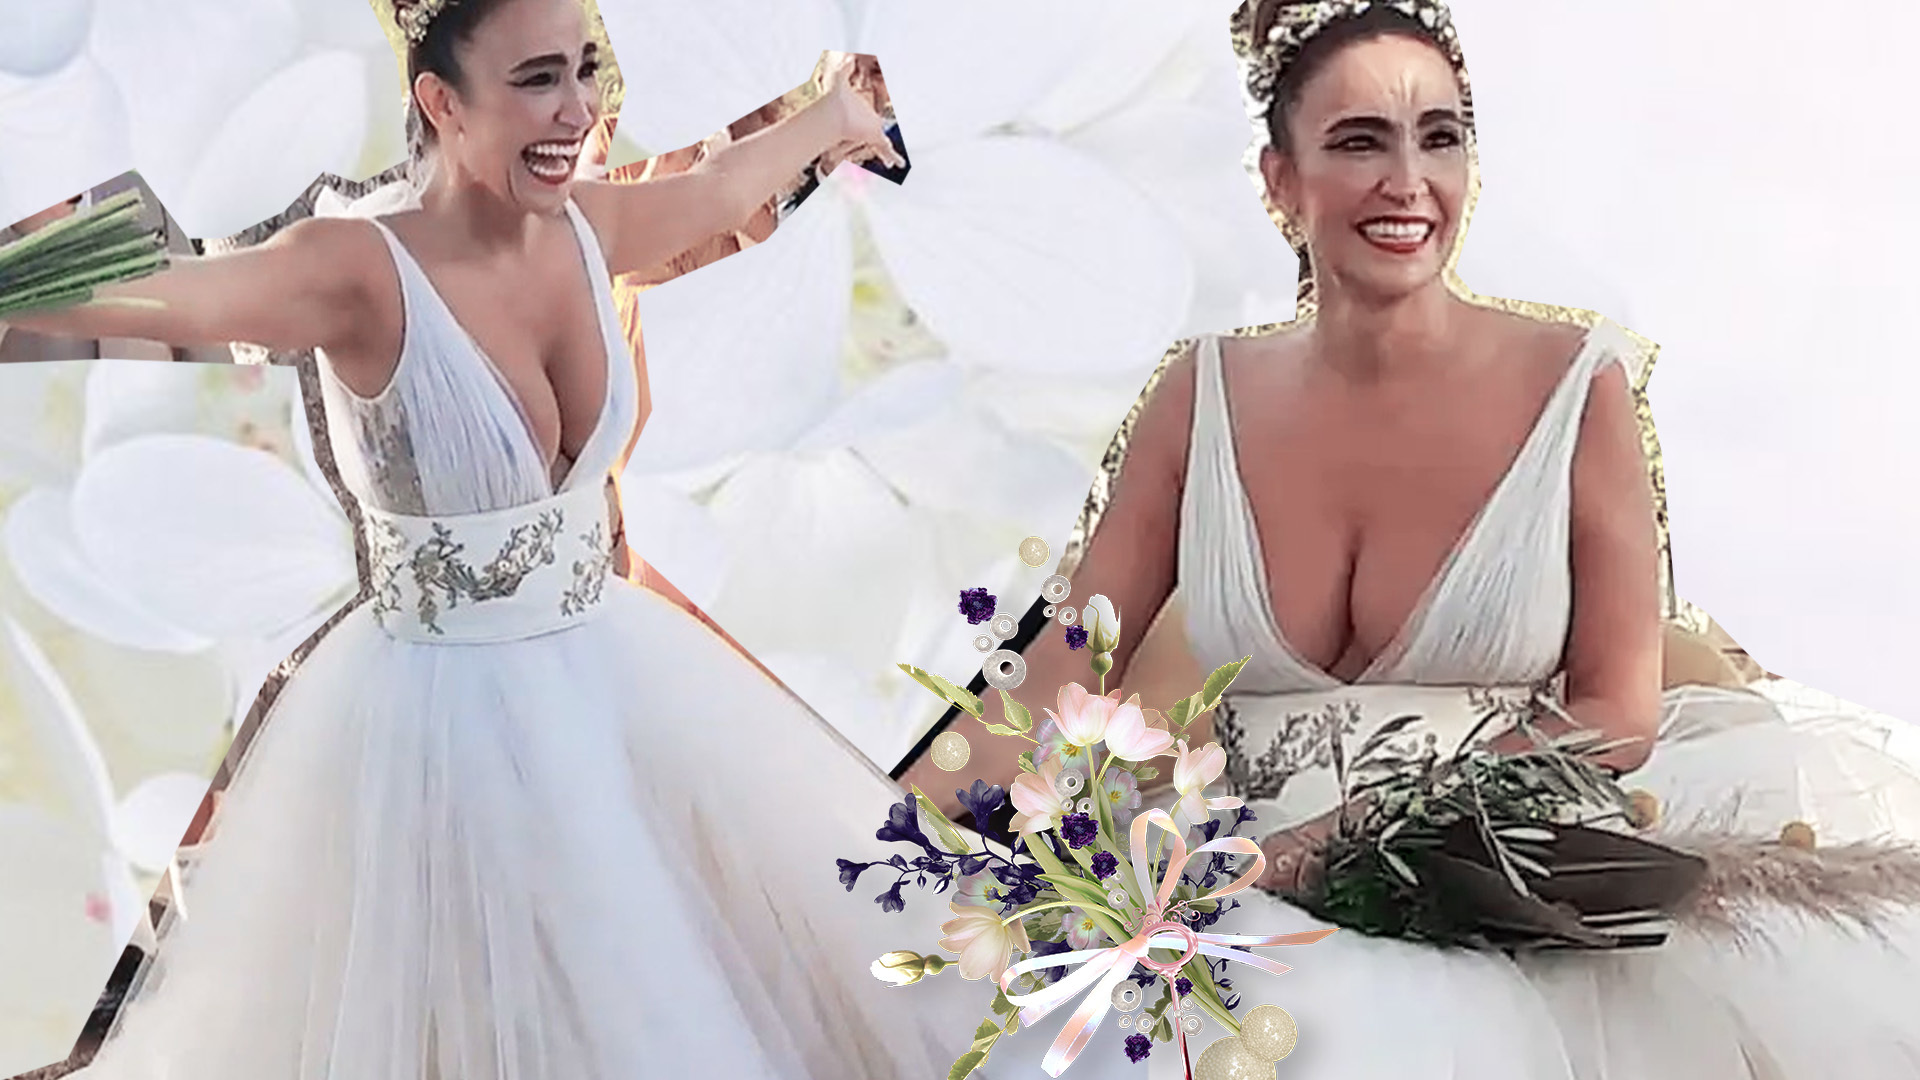 Cristina Rodríguez, dos vestidos de novia y una polémica